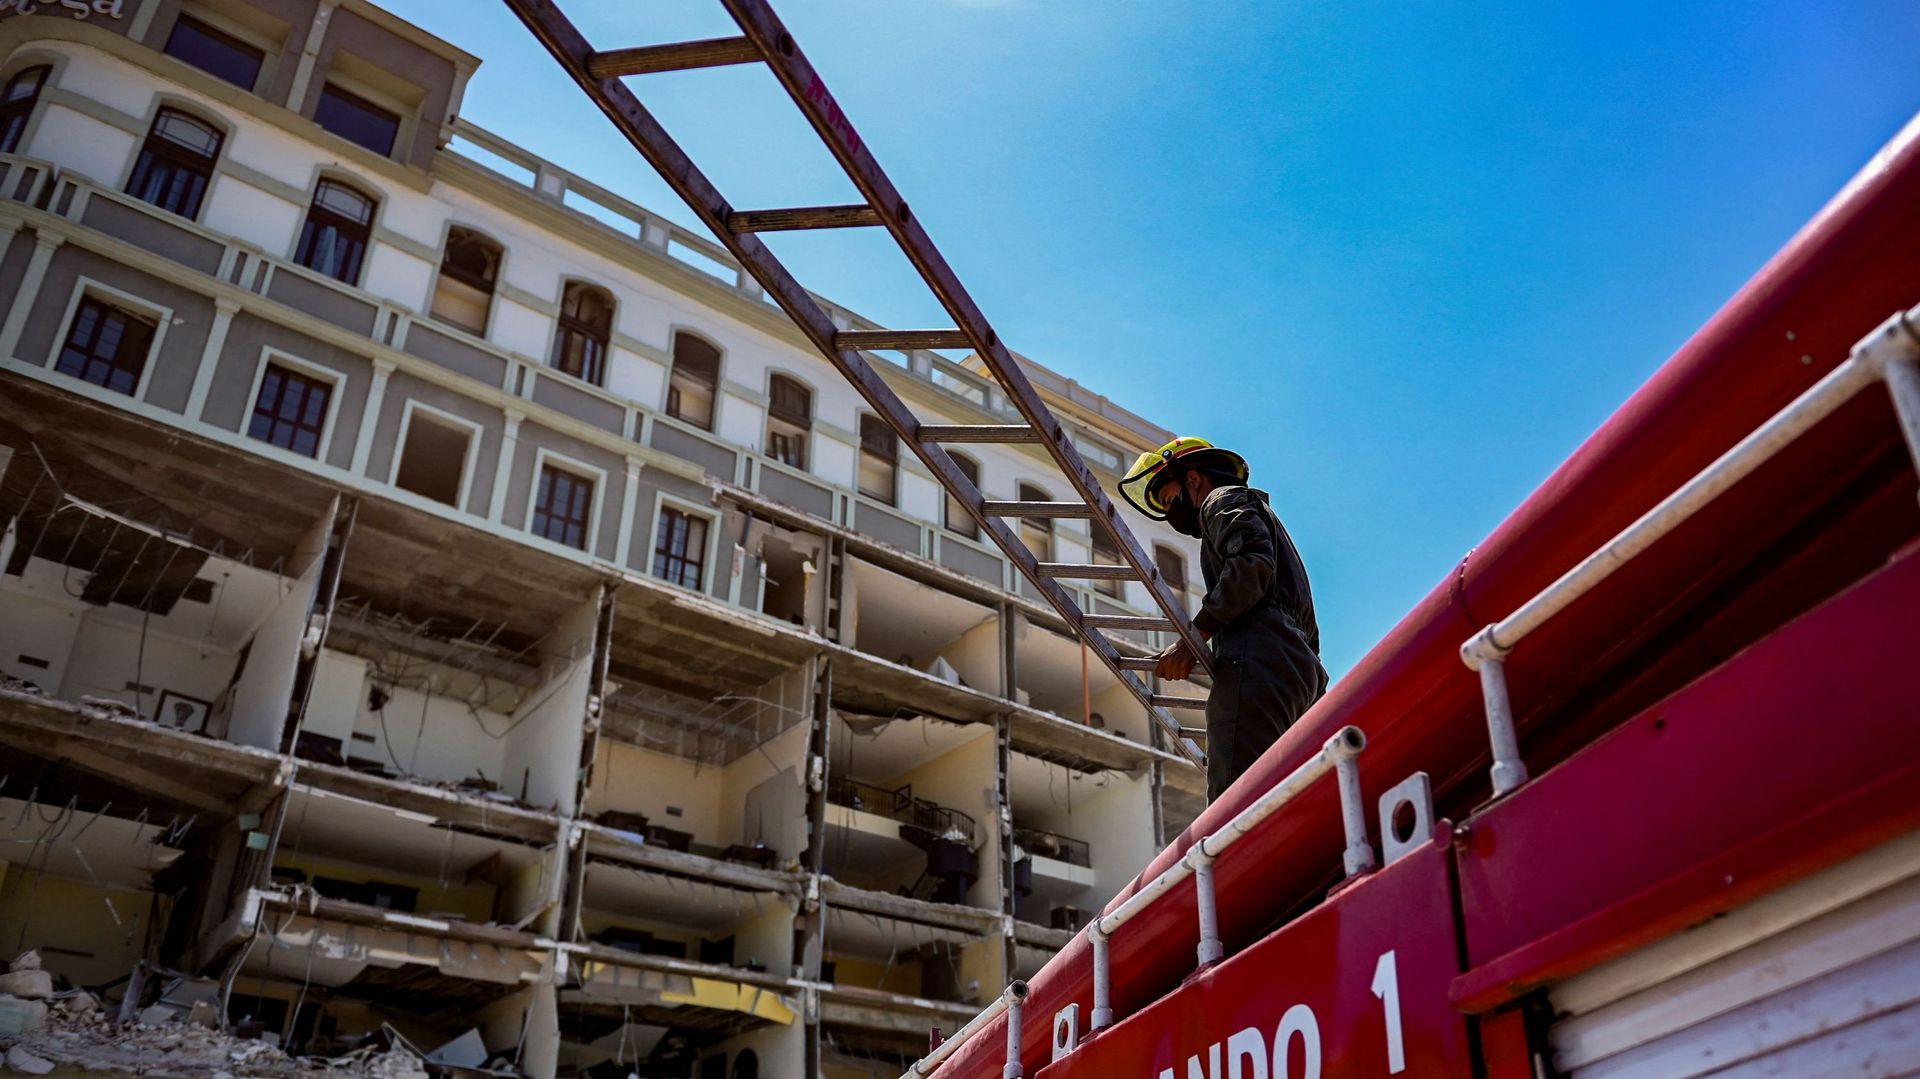 Cuba : un bilan définitif de 45 morts dans l'explosion de l'hôtel Saratoga, deuil national décrété